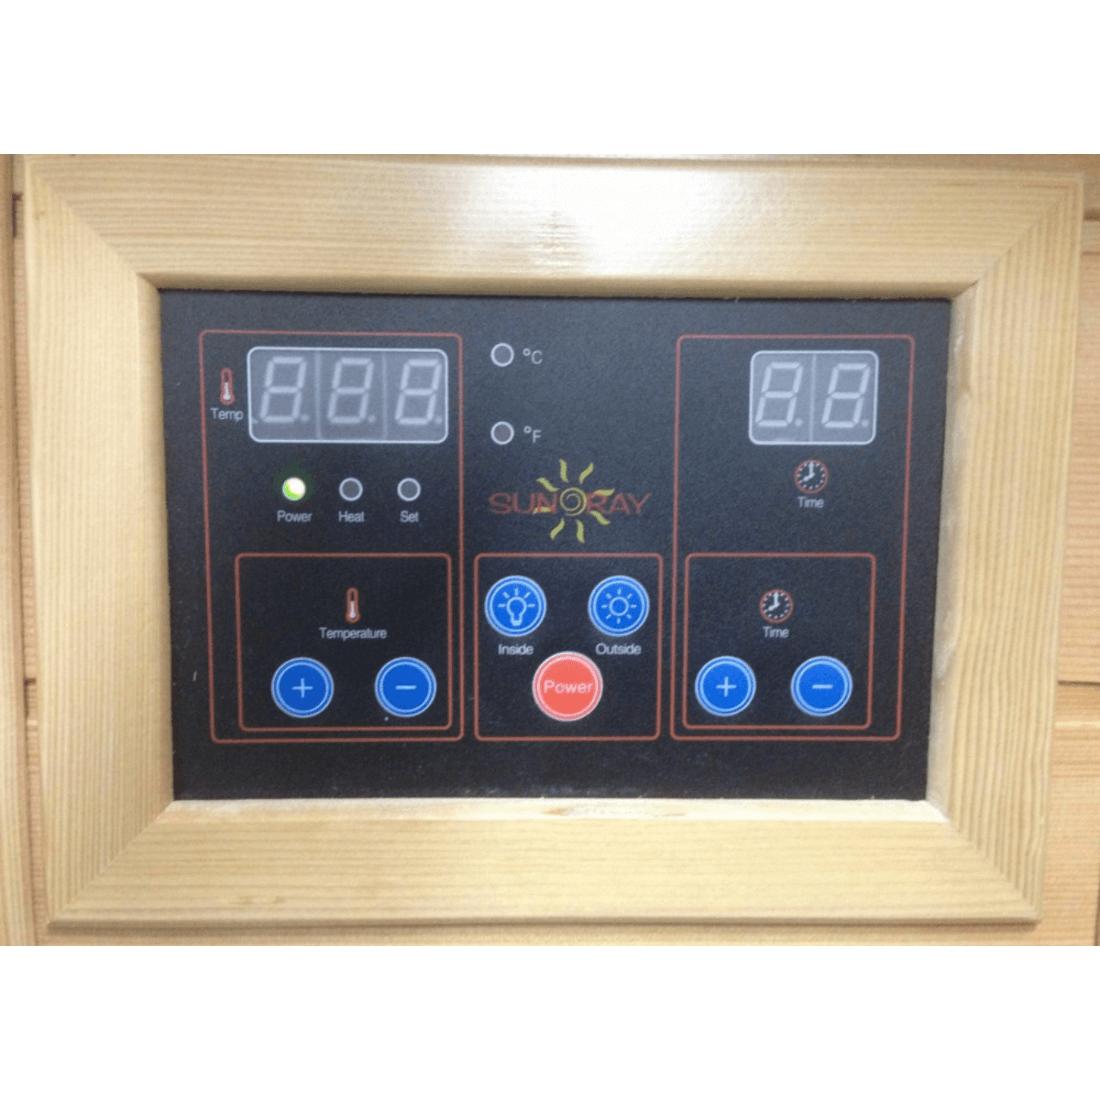 SunRay 1-Person Barrett Sauna HL100K2 temperature control